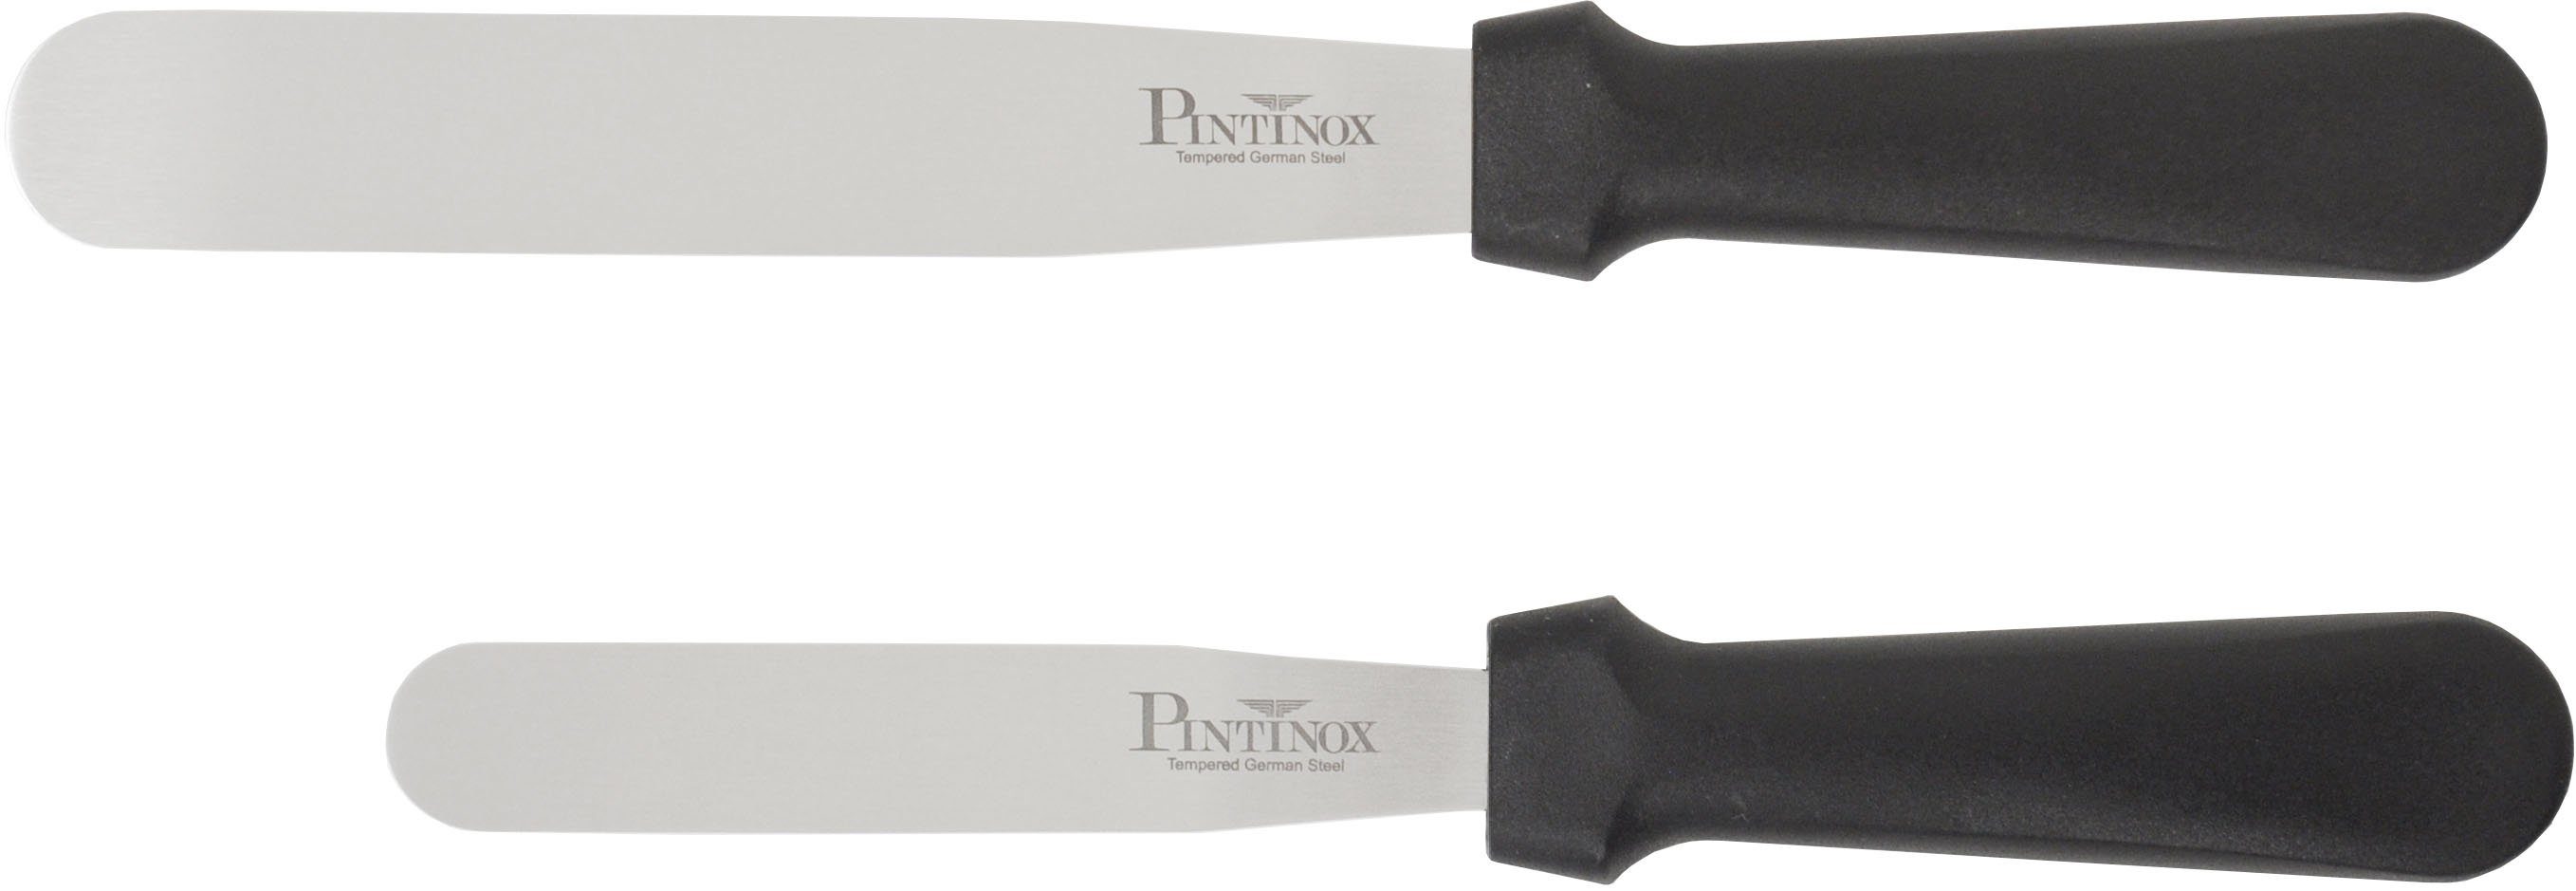 PINTINOX Streichpalette Professional, Edelstahl, spülmaschinengeeinget, 1 Spatel 10,5cm, 1 Spatel 15,9 cm